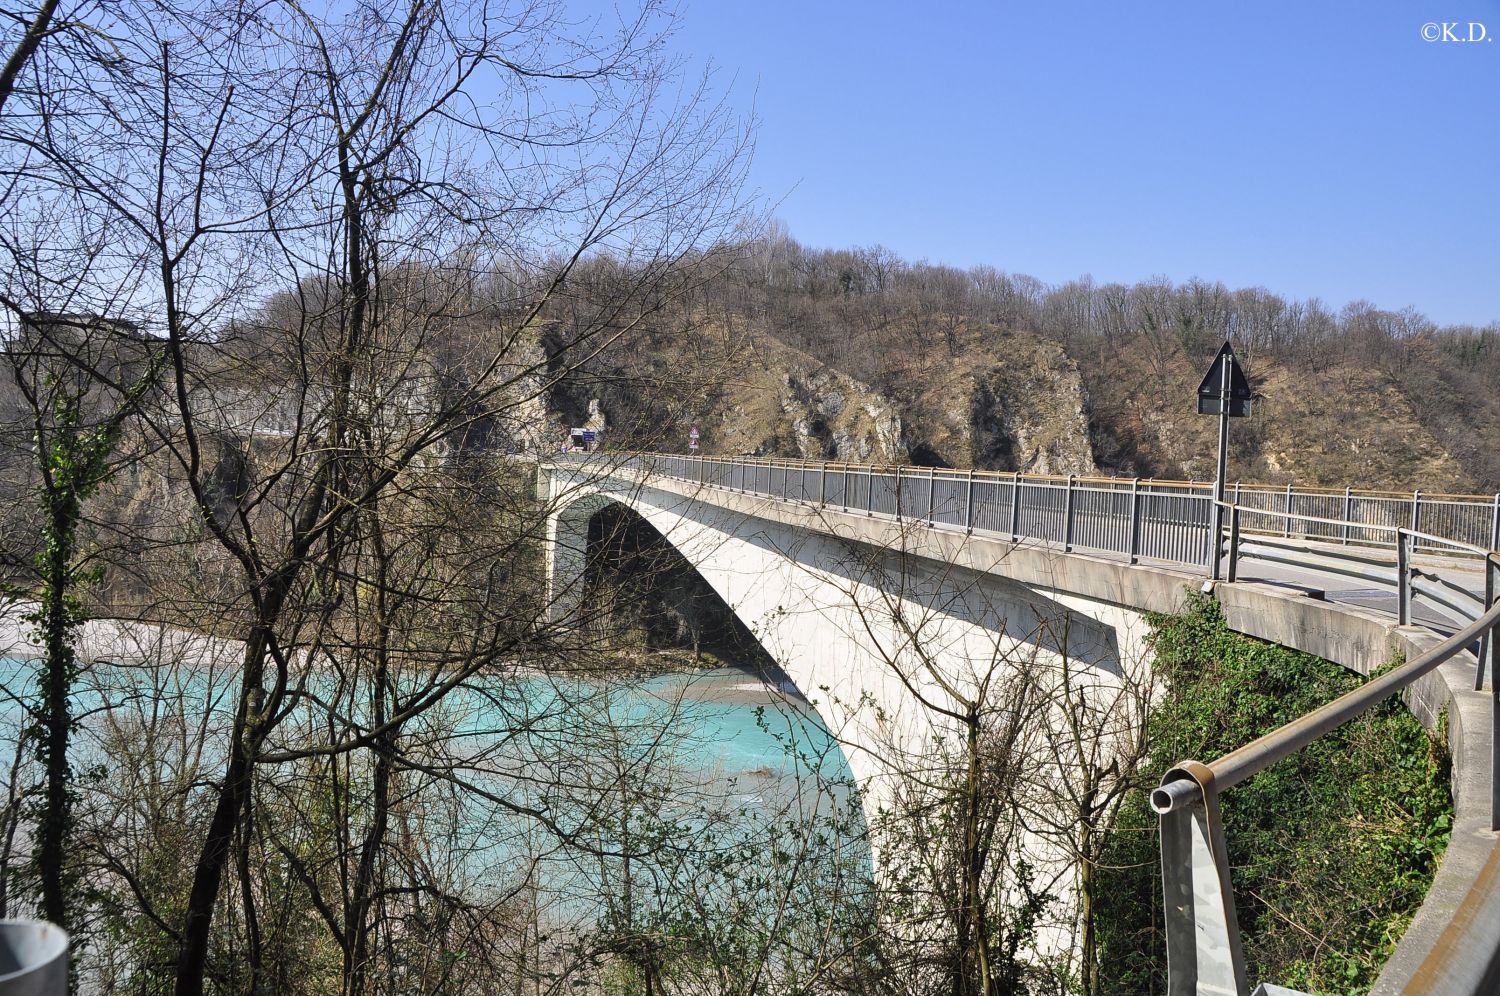 Brücke von Pinzano über den Tagliamento